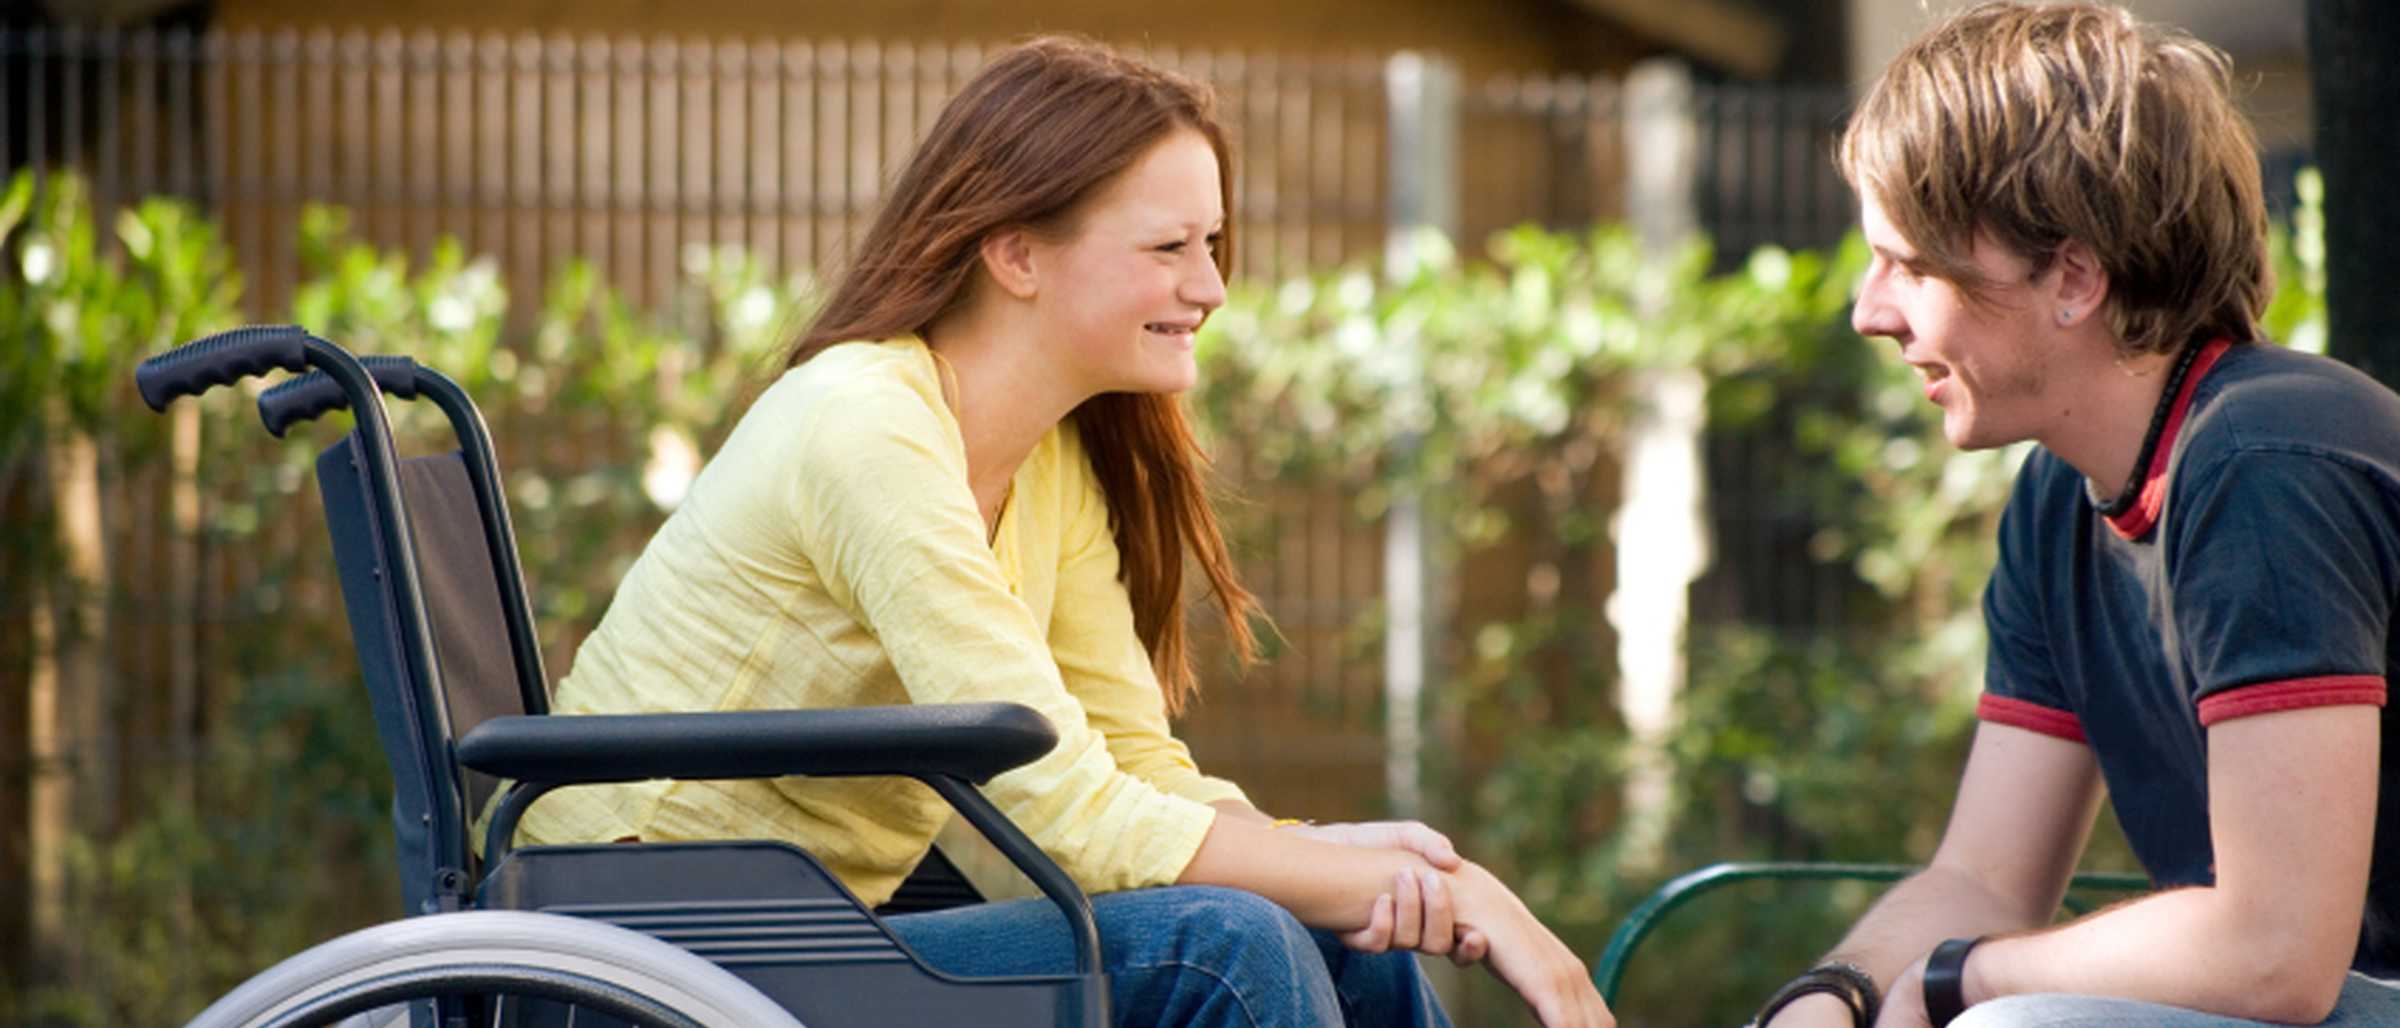 Junge Frau im Rollstuhl spricht mit einem jungen Mann